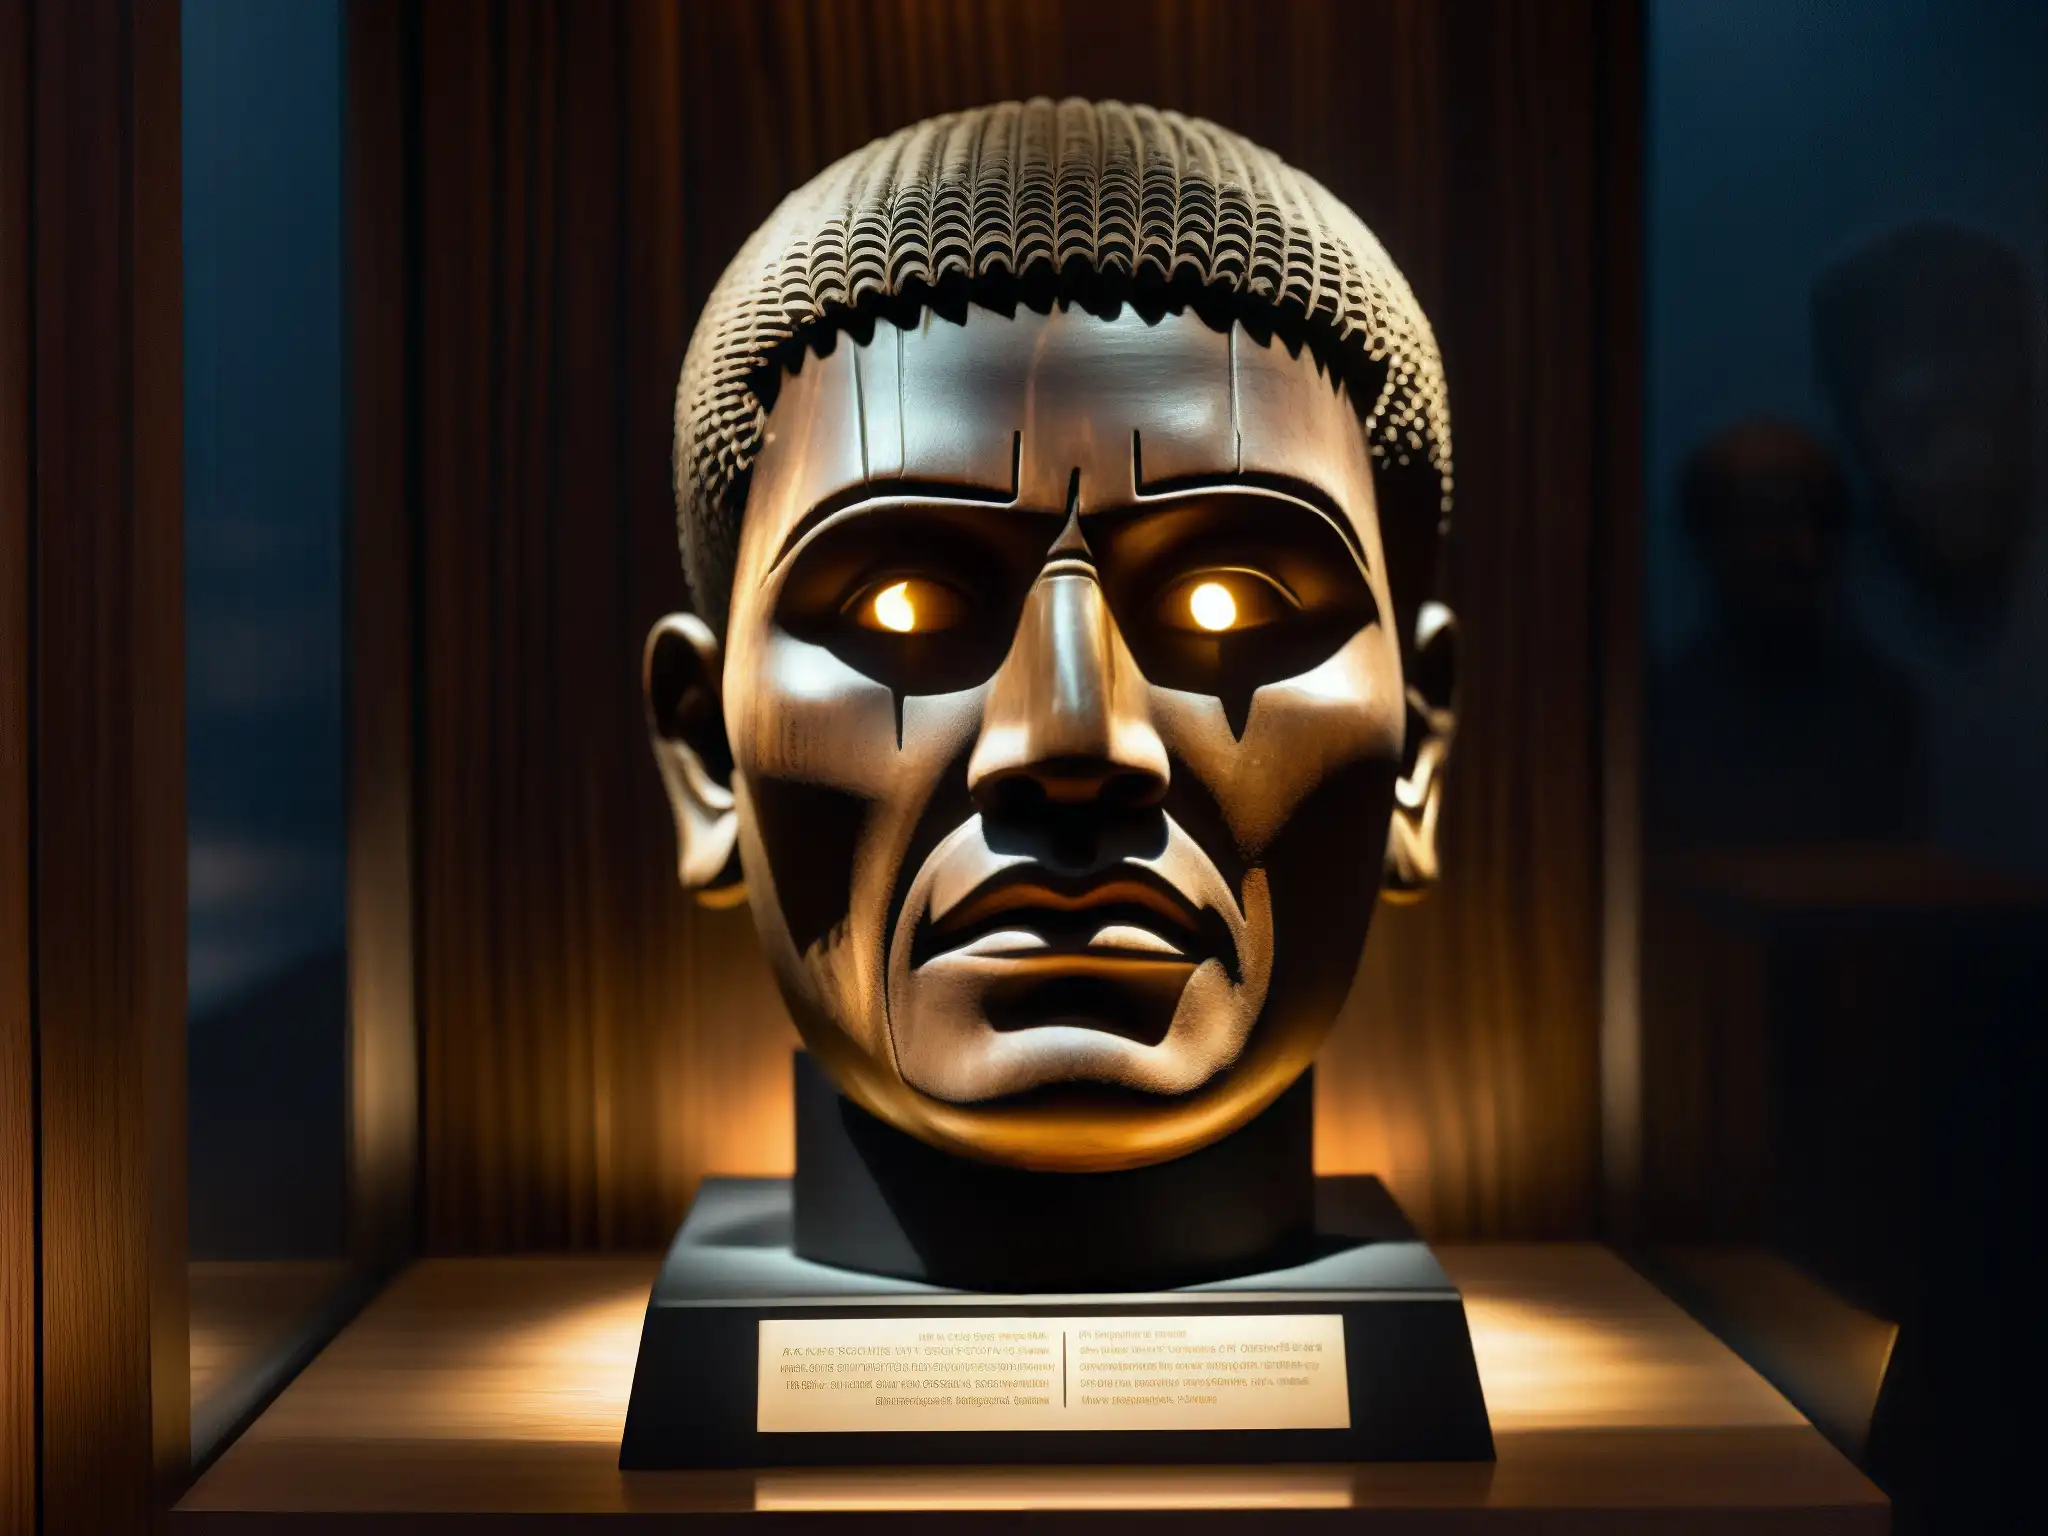 Exhibición en museo con la antigua cabeza de origen maldición parlante tallada en madera oscura, transmitiendo una sensación de angustia y furia